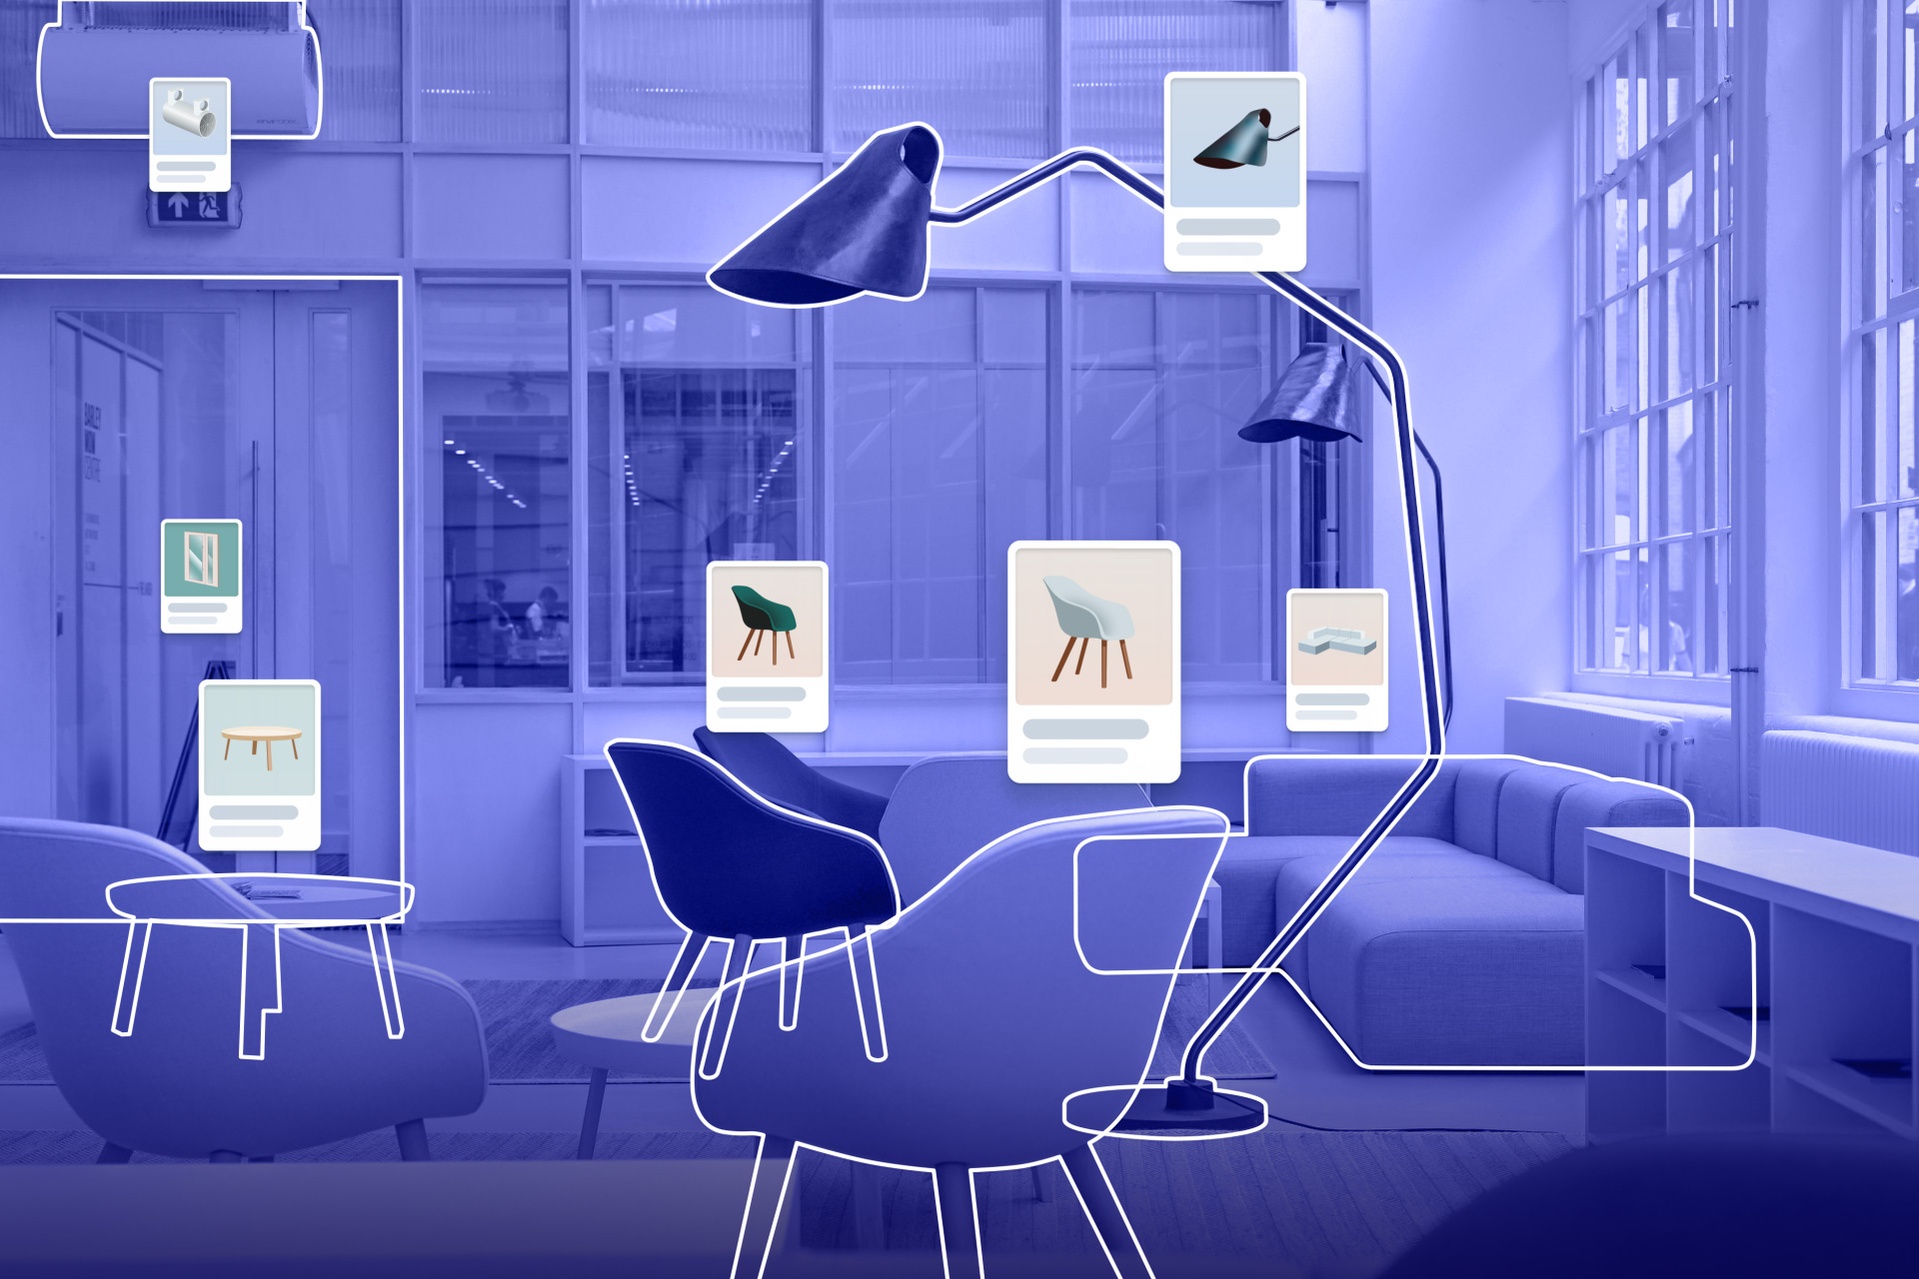 Grafisk visualisering i lila, av en interiör med möbler